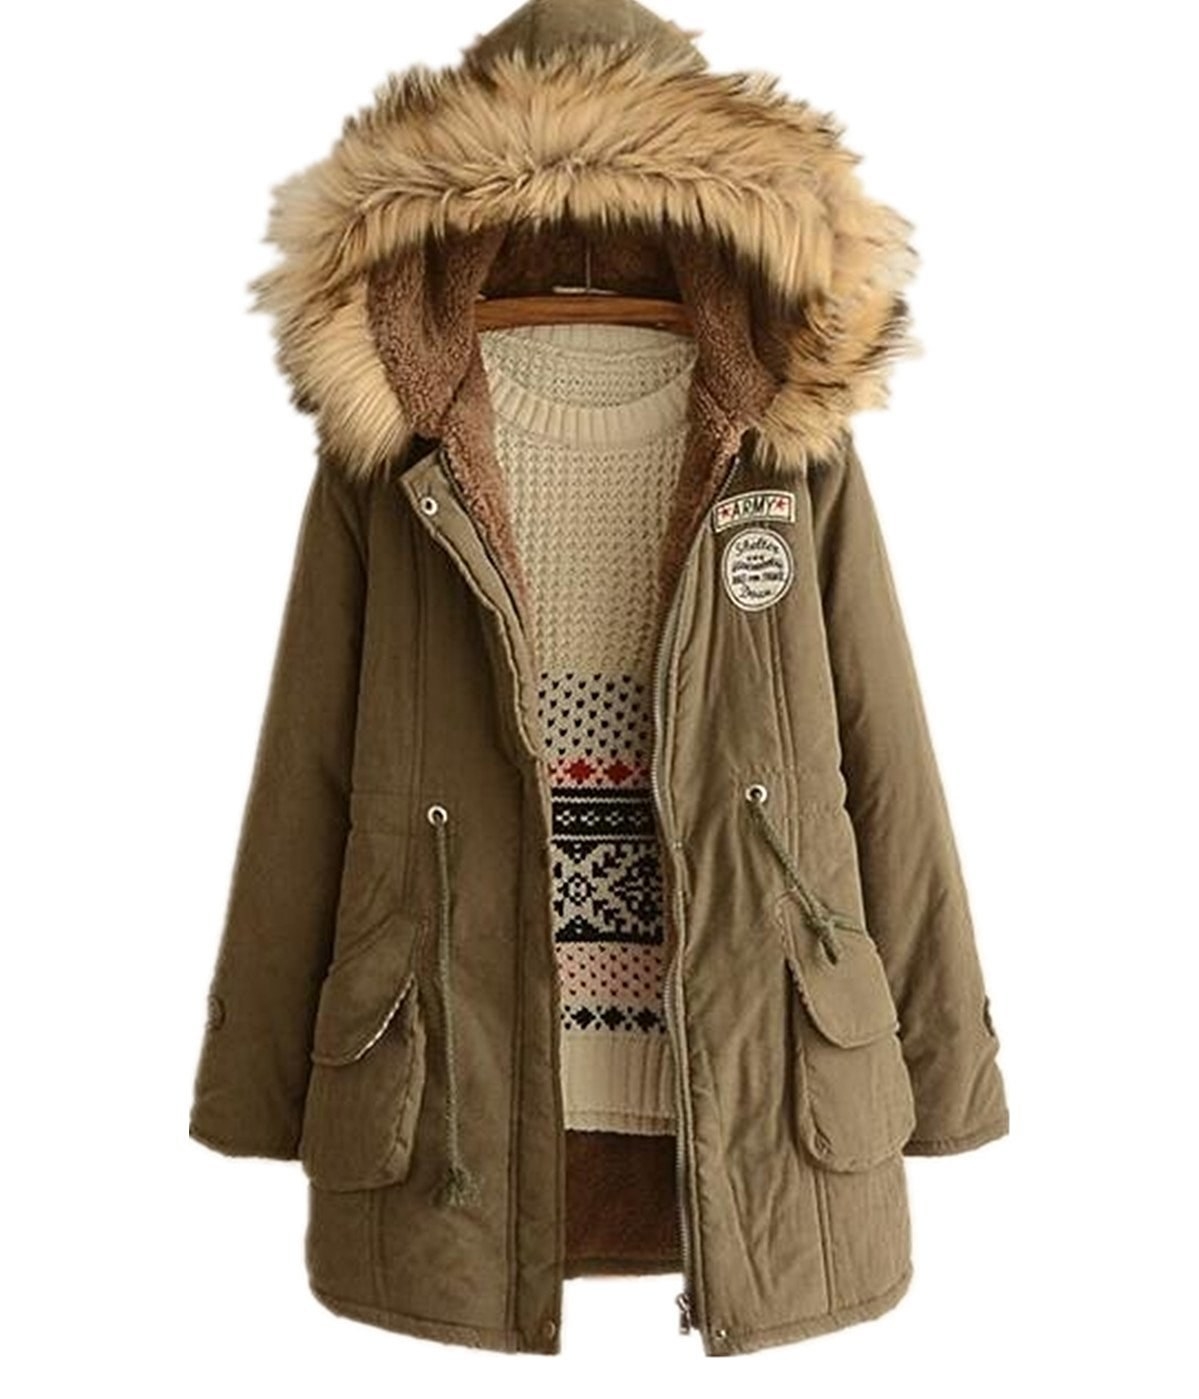 29 Winter Coats That Aren't Bulky Nightmares